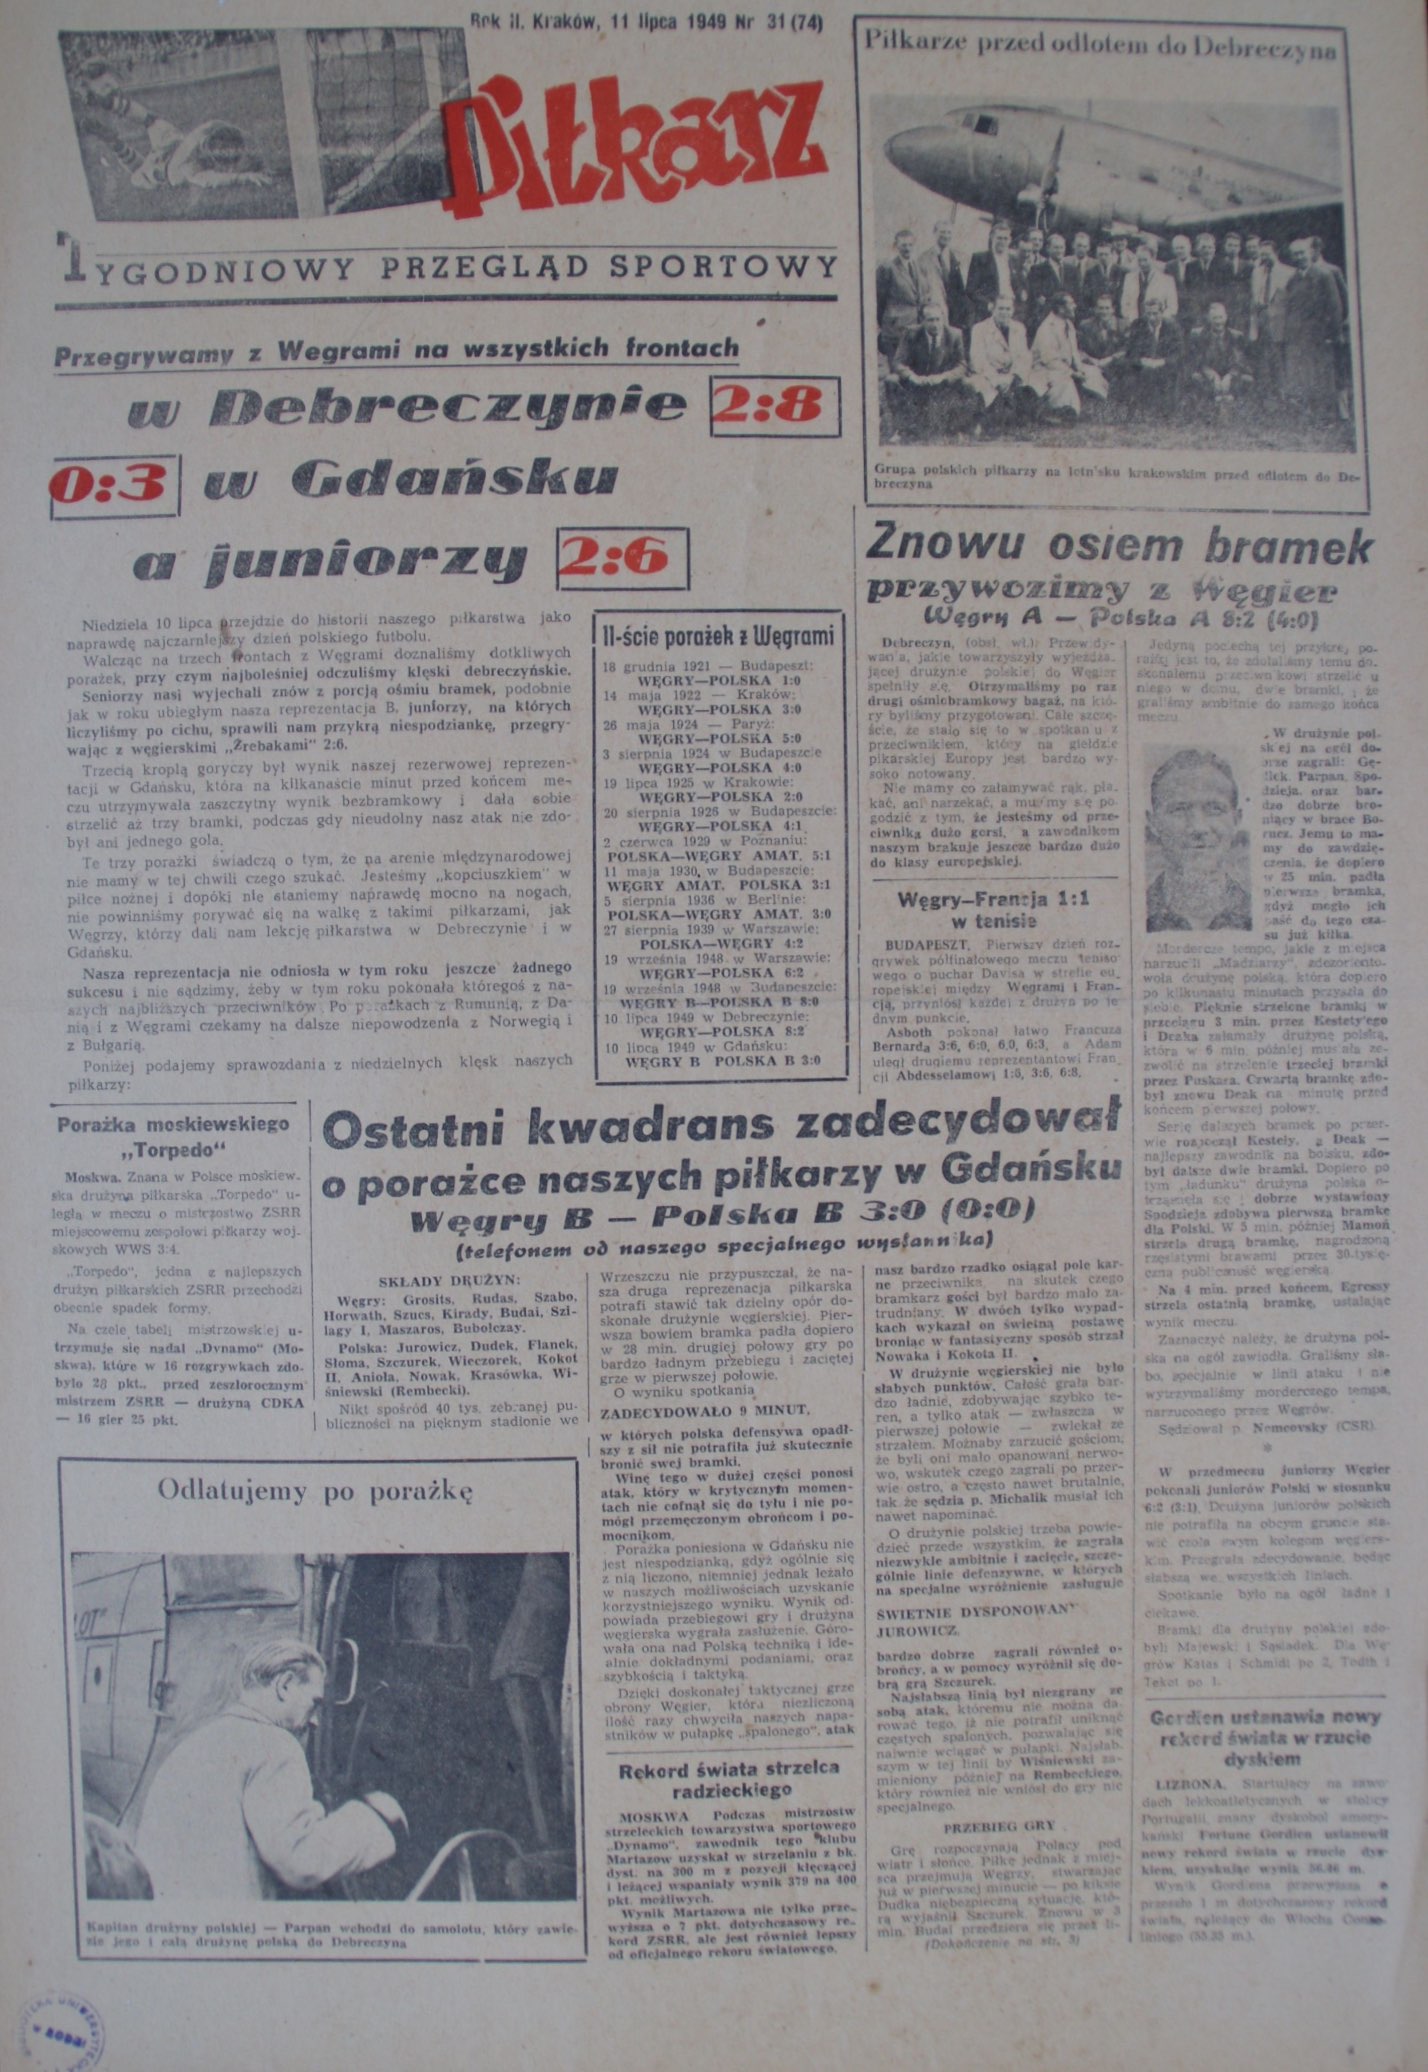 Piłkarz, Tygodniowy Przegląd Sportowy po meczu Węgry - Polska 8:2 (10.07.1949)